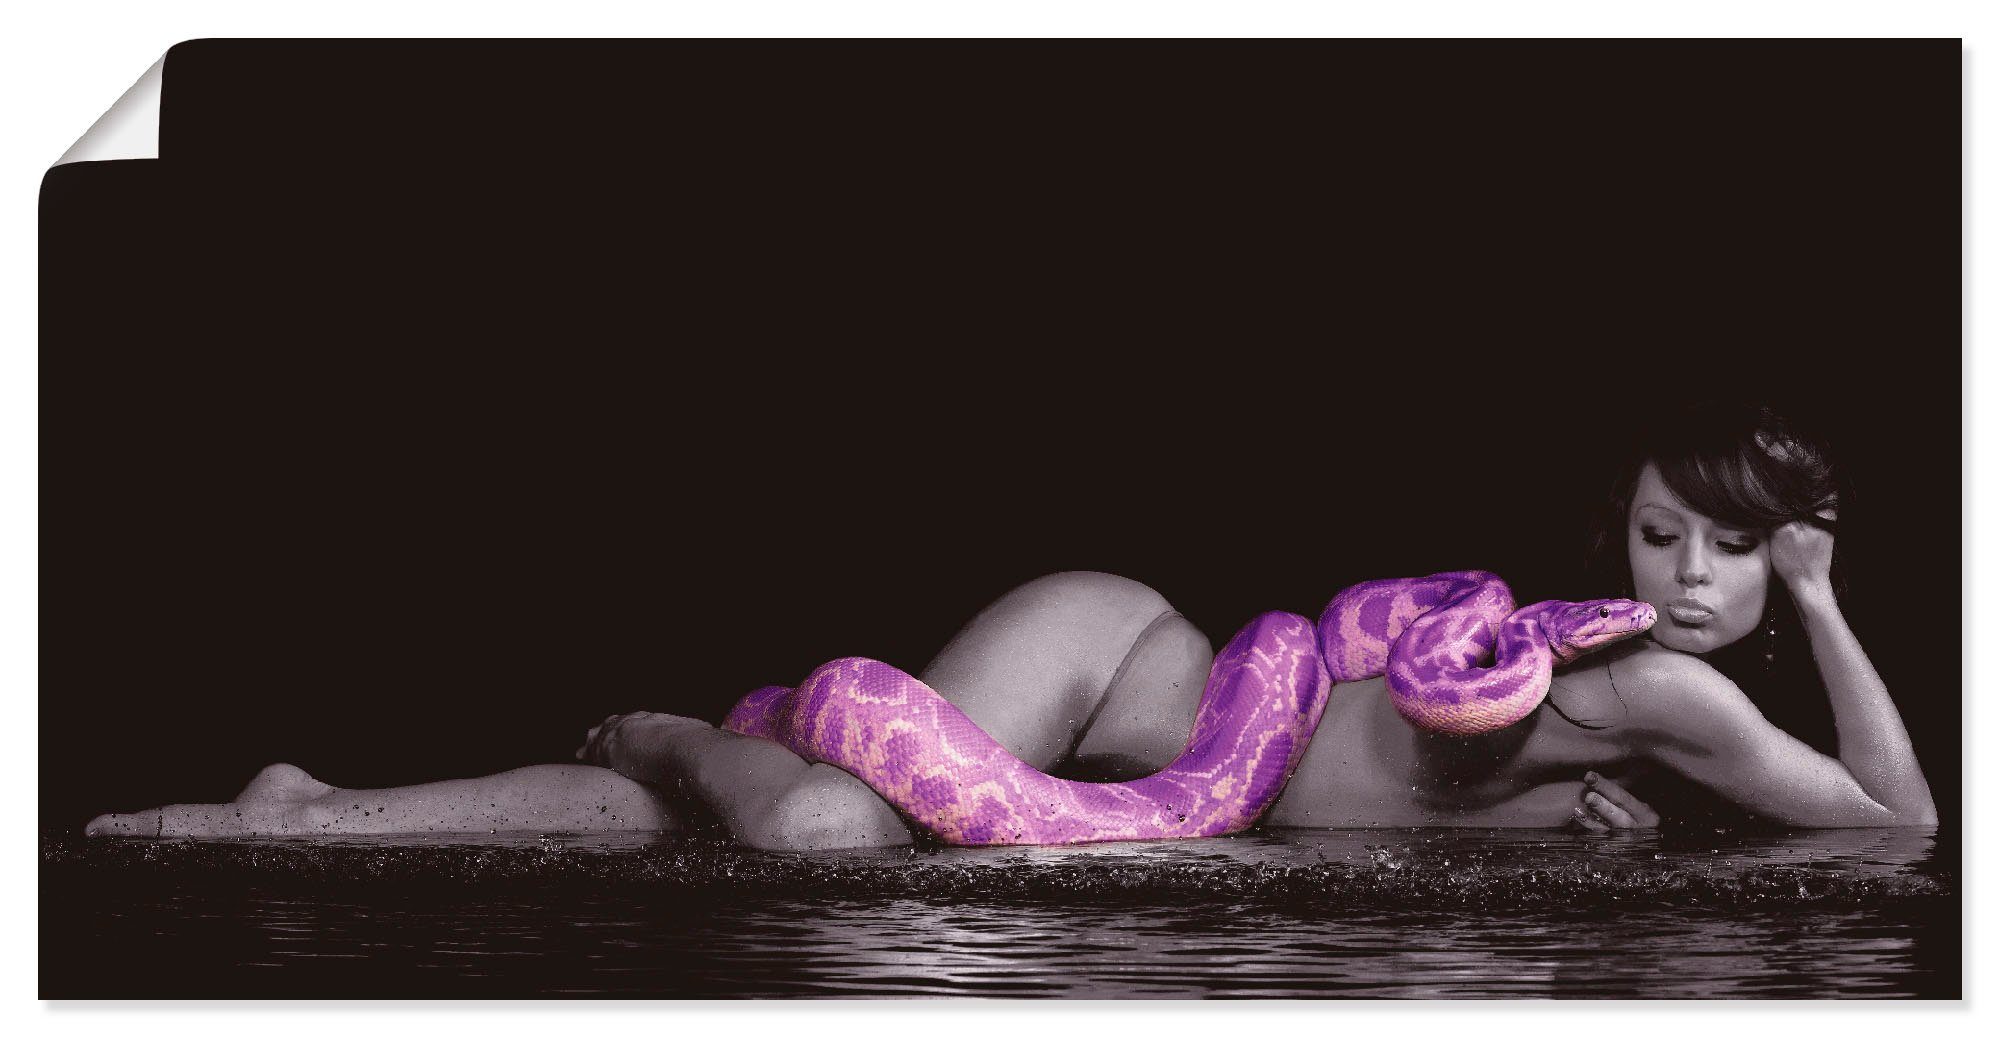 Artland Artprint Vrouw in water liggend met python in vele afmetingen & productsoorten - artprint van aluminium / artprint voor buiten, artprint op linnen, poster, muursticker / wa